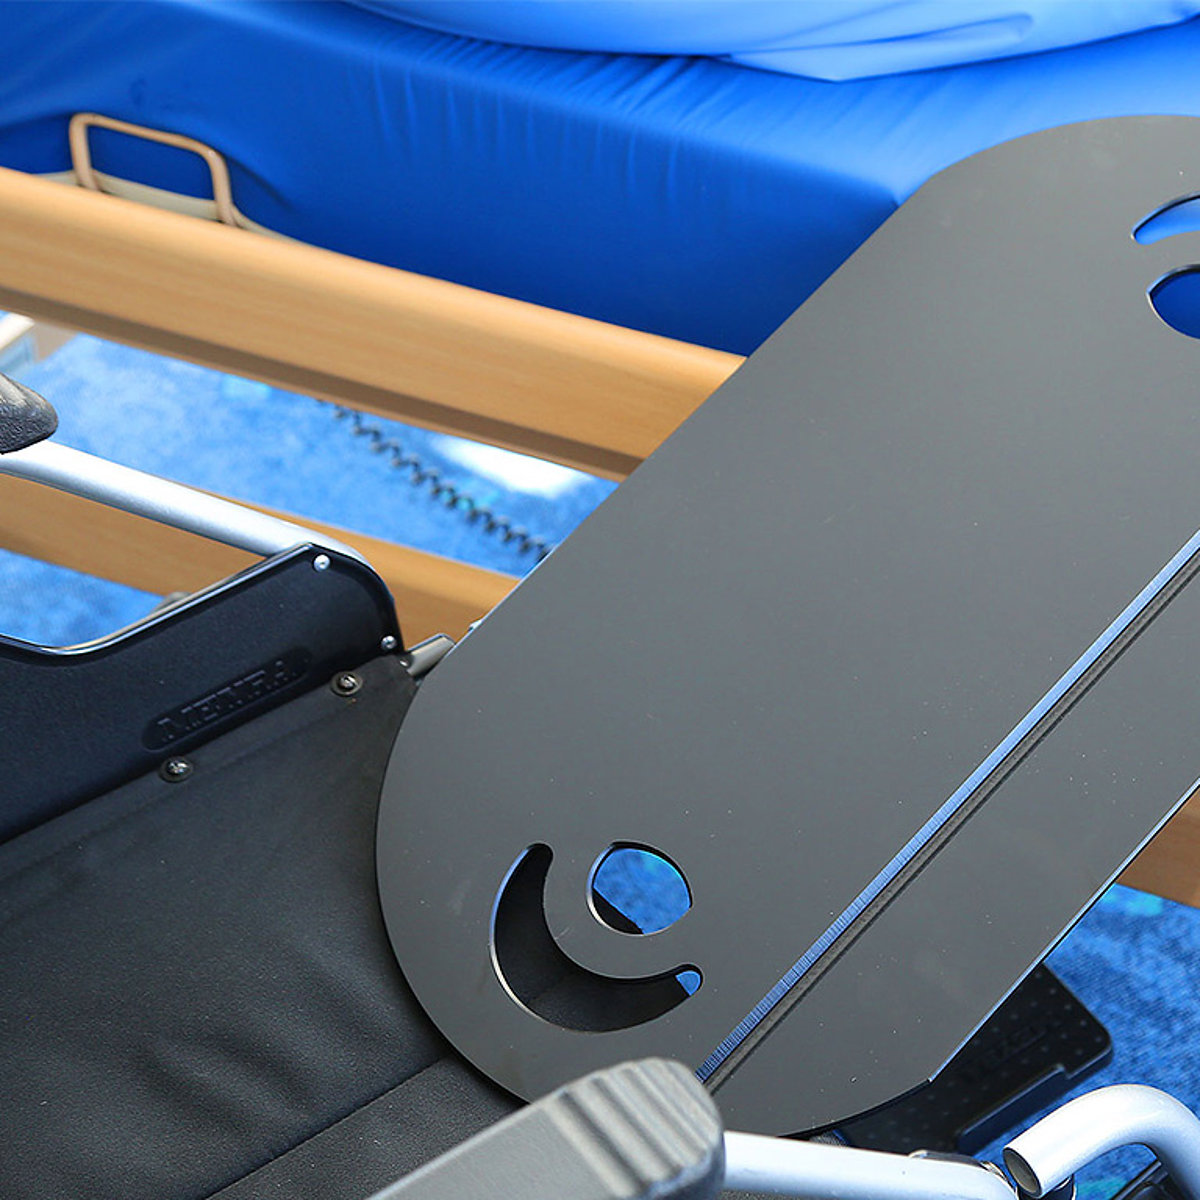 Eine spezielle Auflage ermöglicht einen fließenden Übergang von Pflegebett zu Rollstuhl.